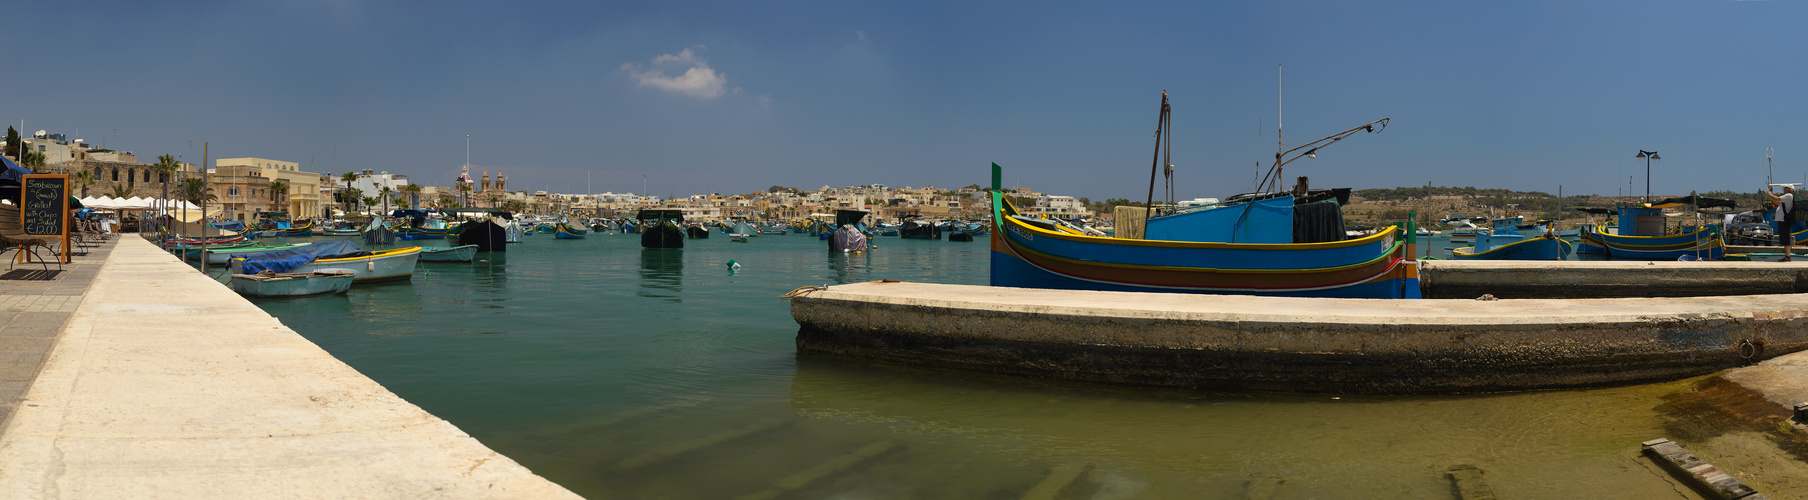 Malta, Marsaxlokk, größtes Fischerdorf auf Malta